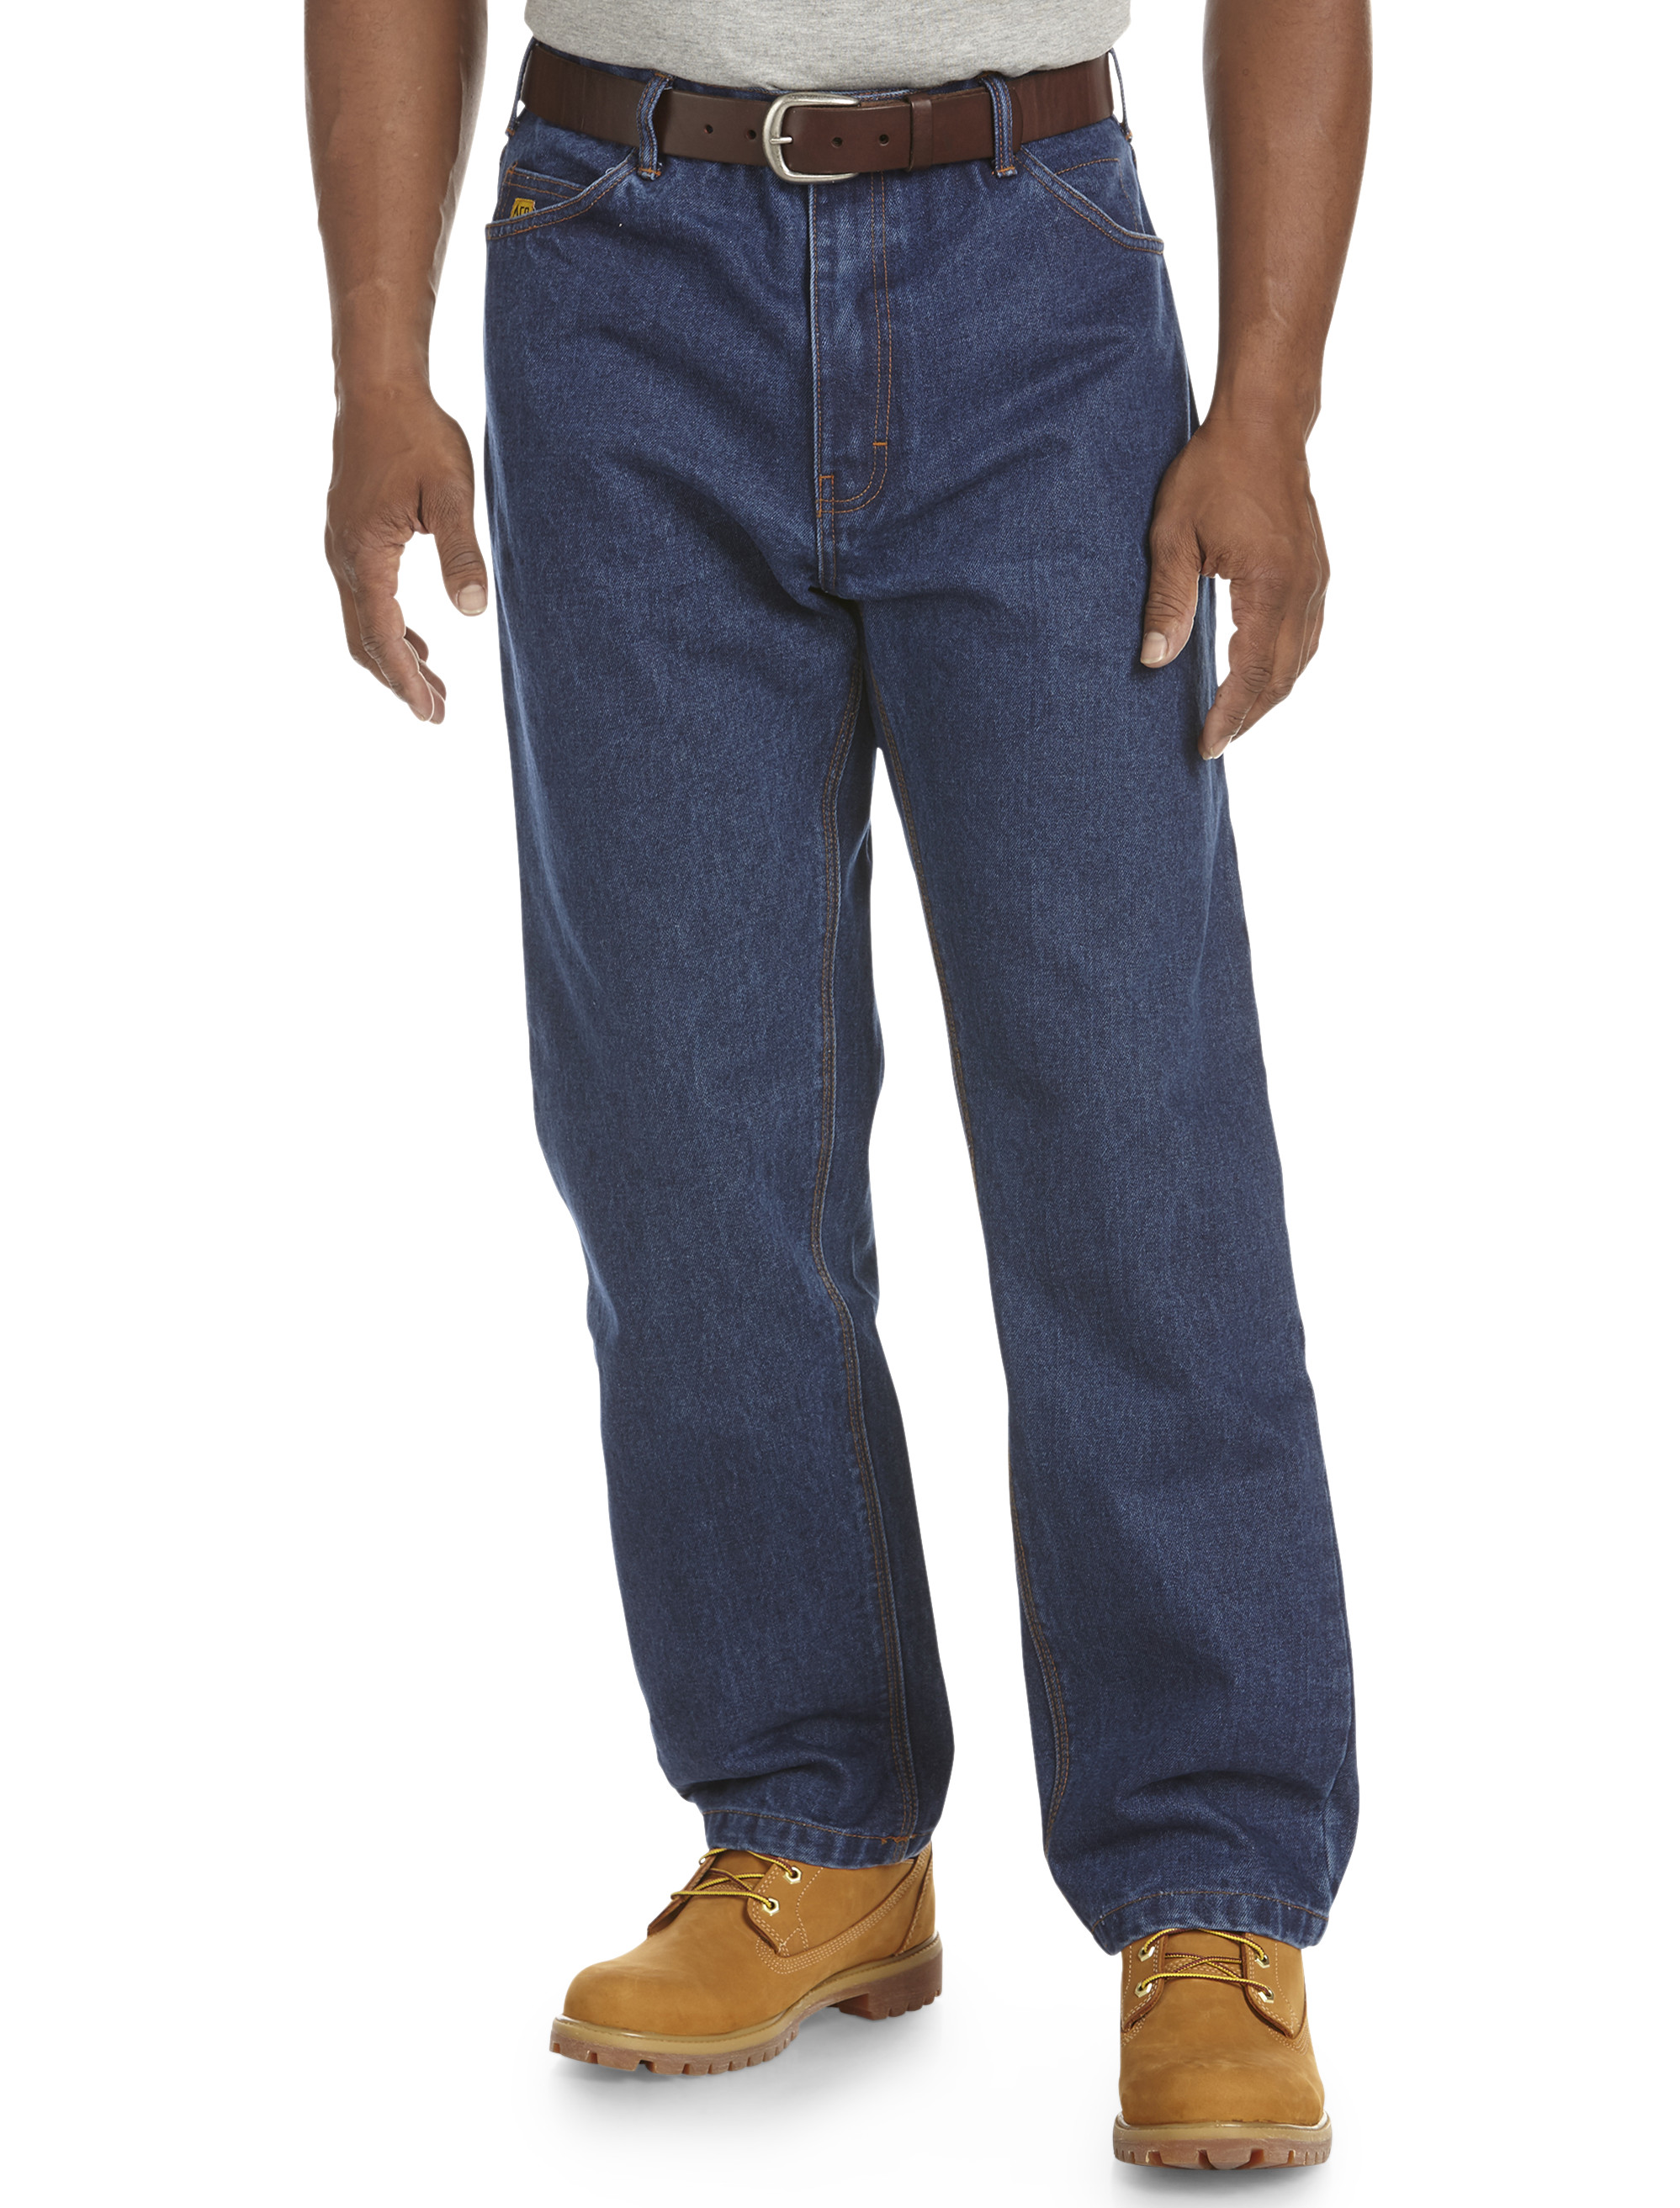 Big + Tall Loose-Fit Jeans | DXL